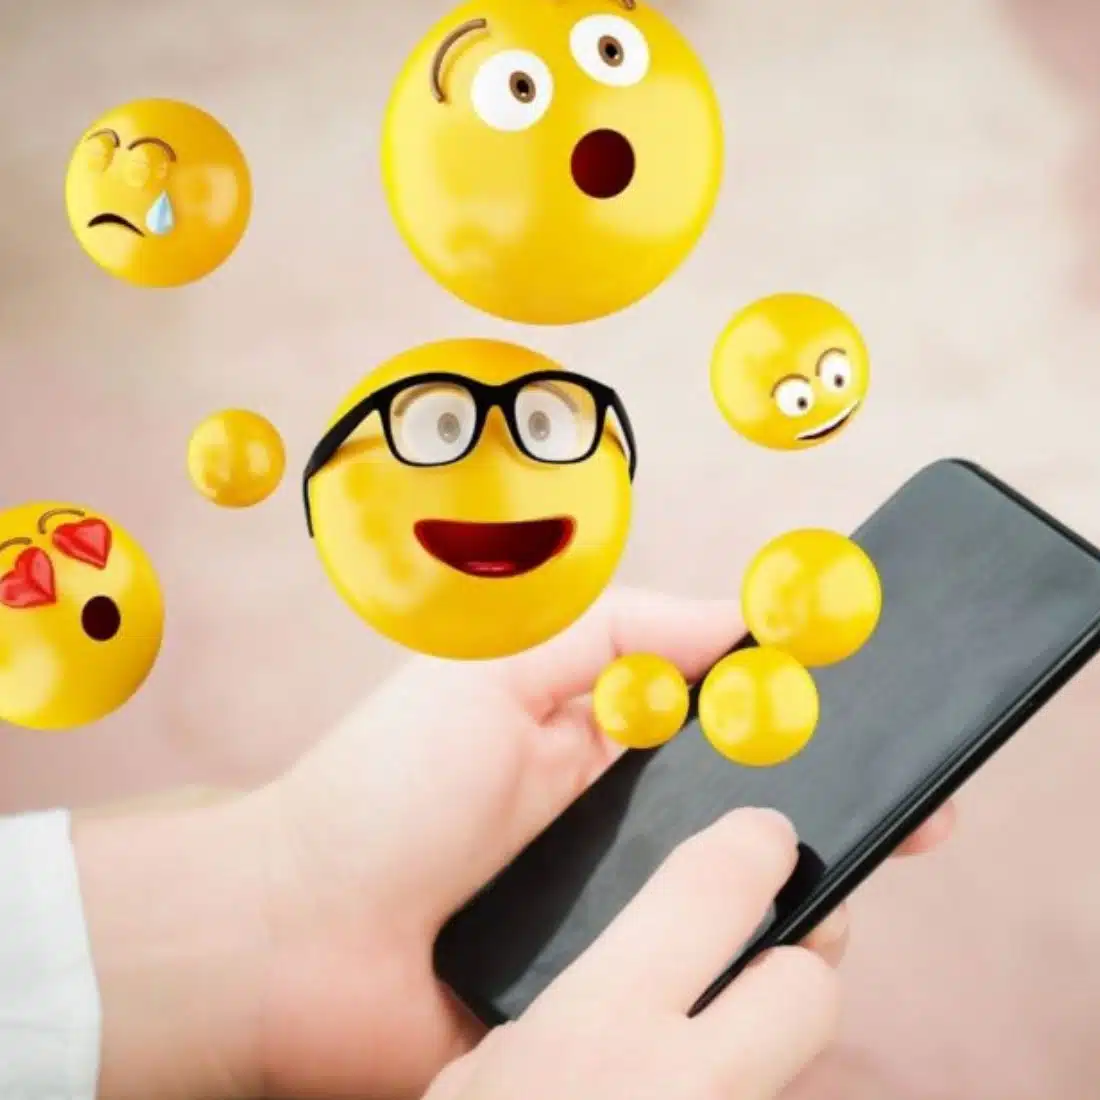 Cómo usar el Marketing de Emojis para engagement